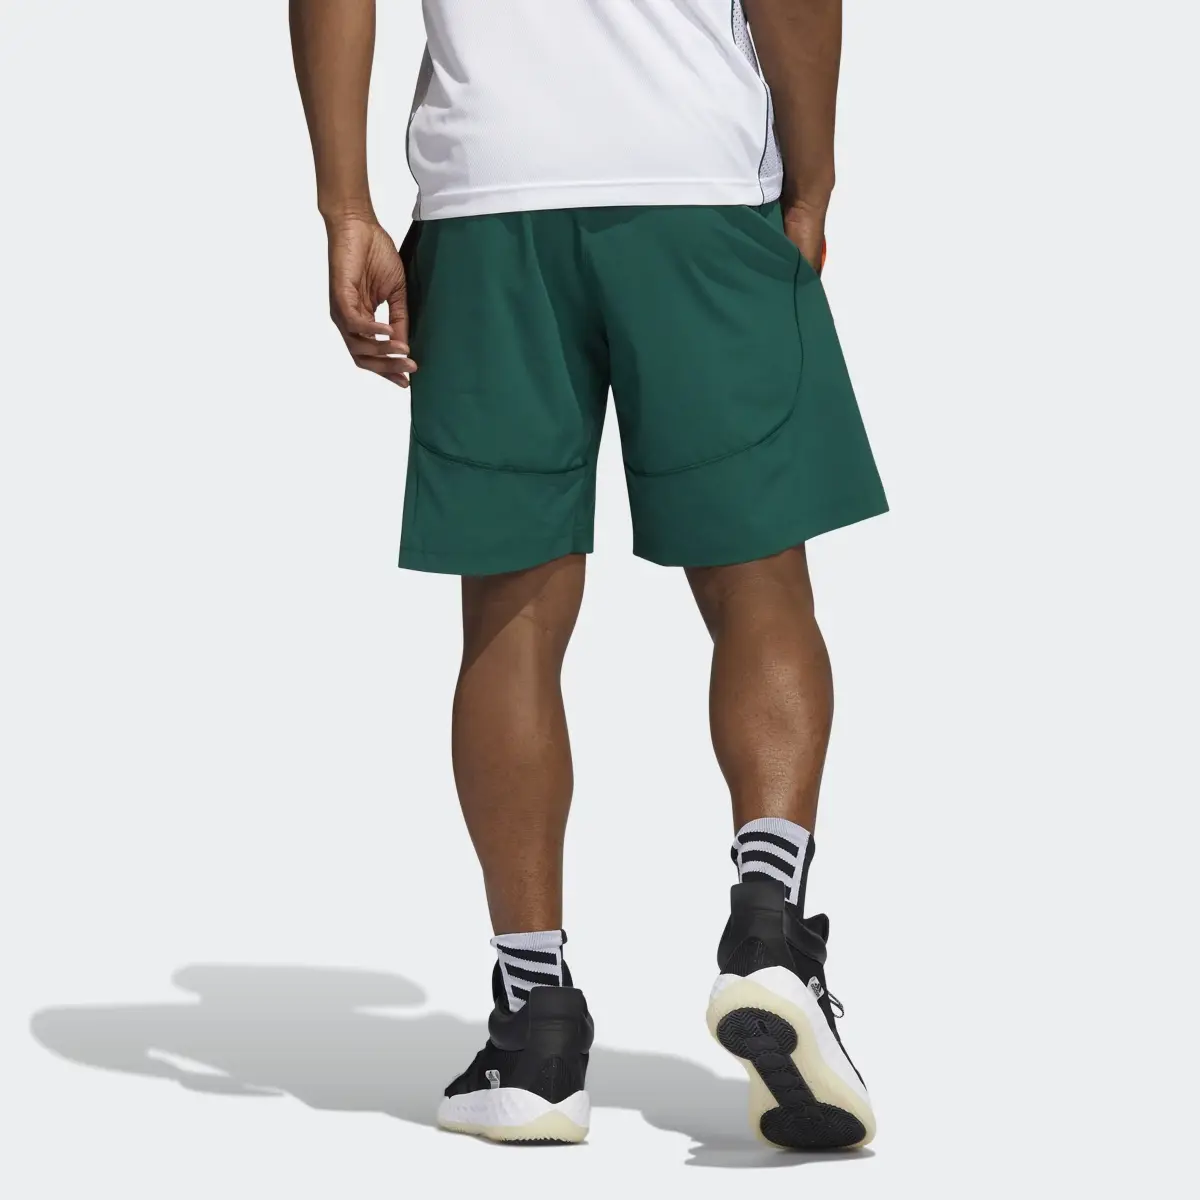 Adidas Hurricanes NCAA Swingman Shorts. 2